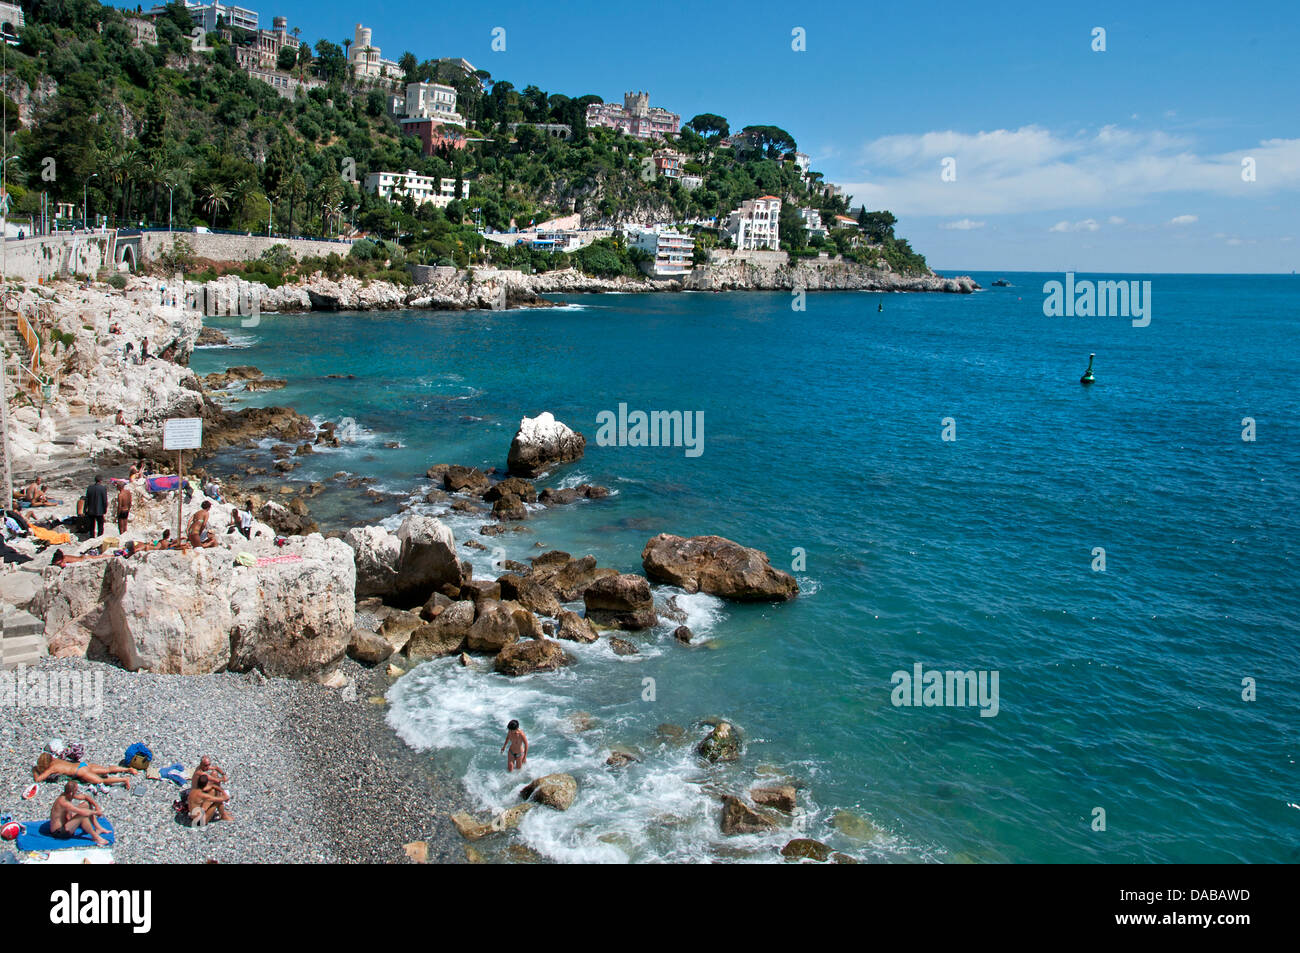 La spiaggia e il mare a Nizza Vecchia ( sfondo Av Jean Lorrain e Parc du Mont Boron ) Costa Azzurra Costa Azzurra Francia Foto Stock